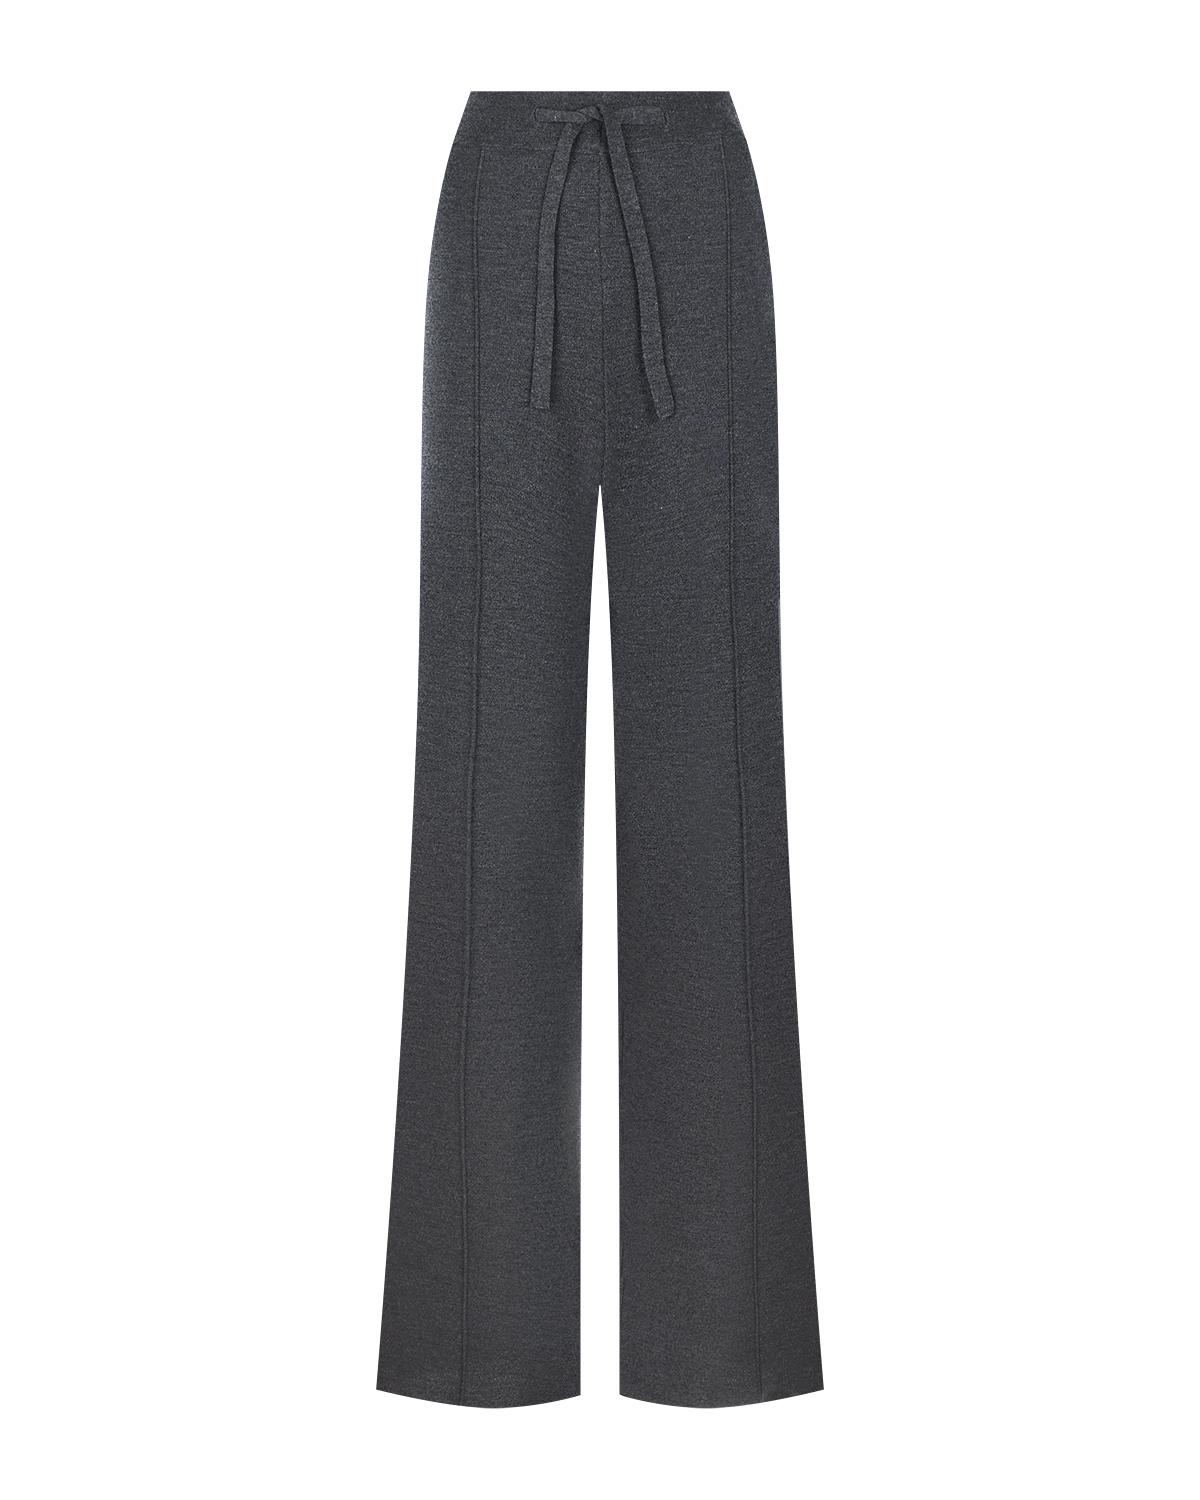 Темно-серые спортивные брюки со стрелками MRZ, размер 40, цвет нет цвета - фото 1